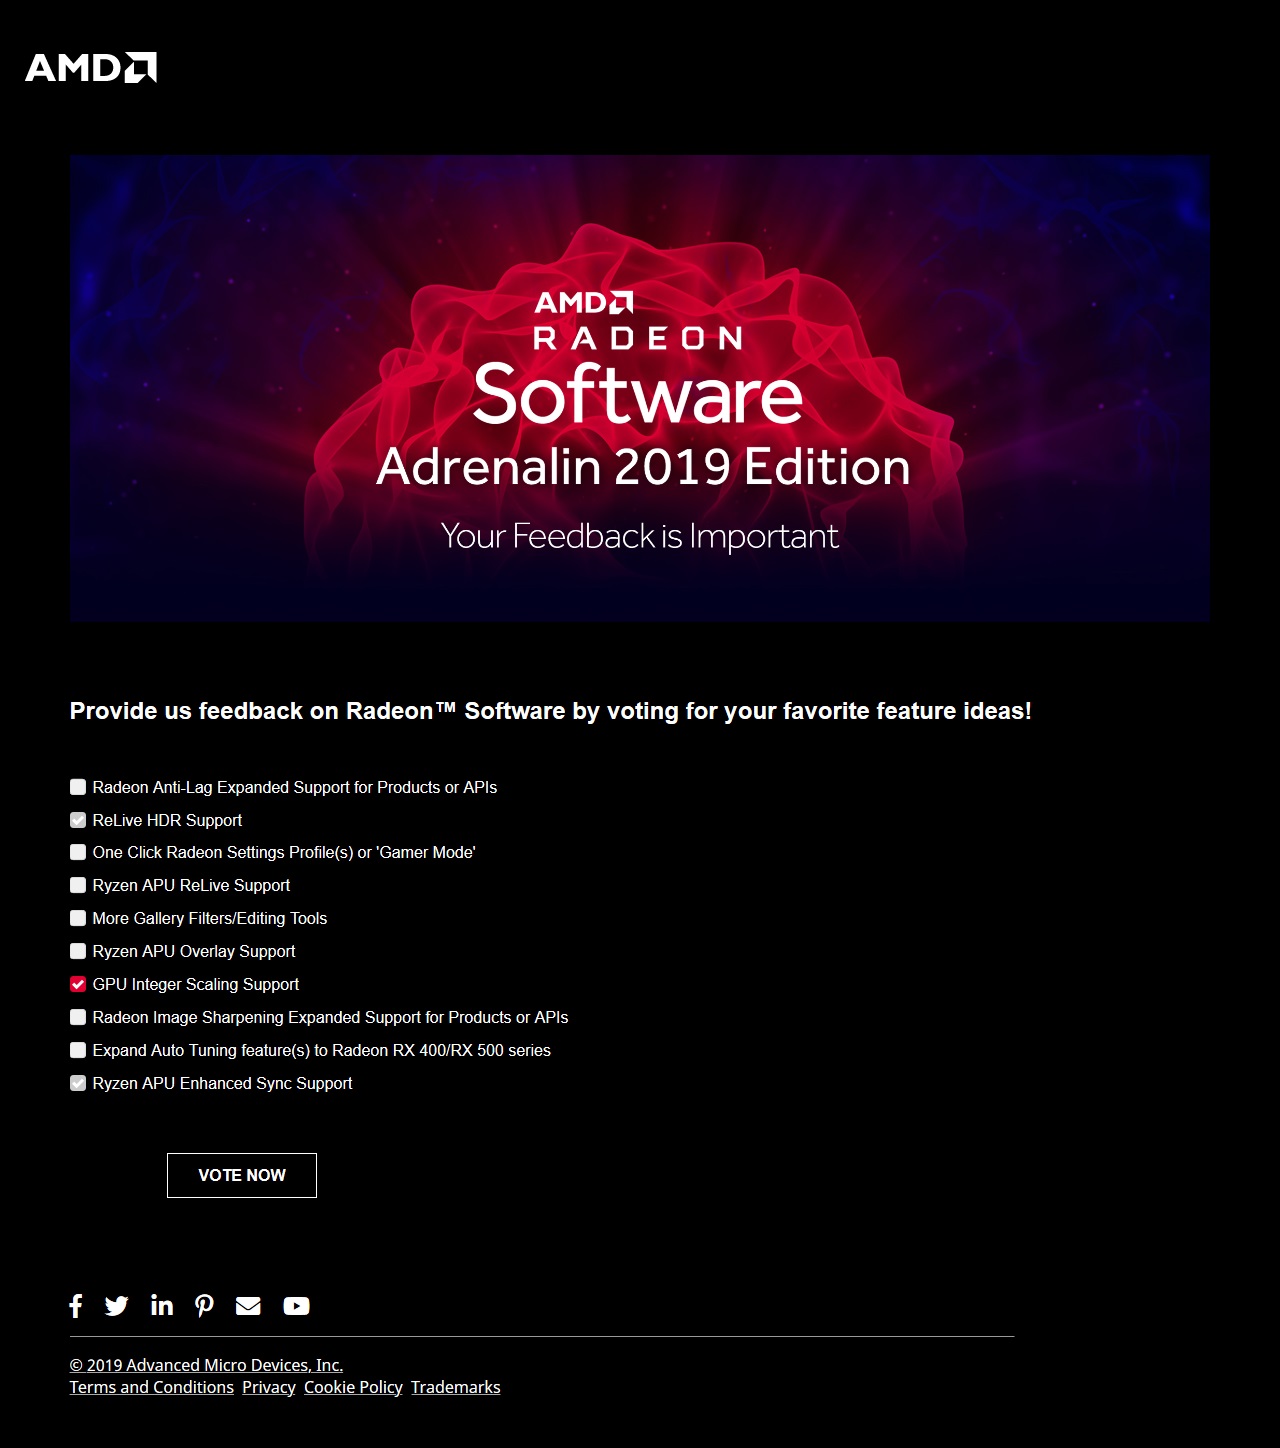 Risorsa grafica - foto, screenshot o immagine in genere - relativa ai contenuti pubblicati da amdzone.it | Nome immagine: news30173_AMD-GPU-Integer-Scaling-Support_1.jpg